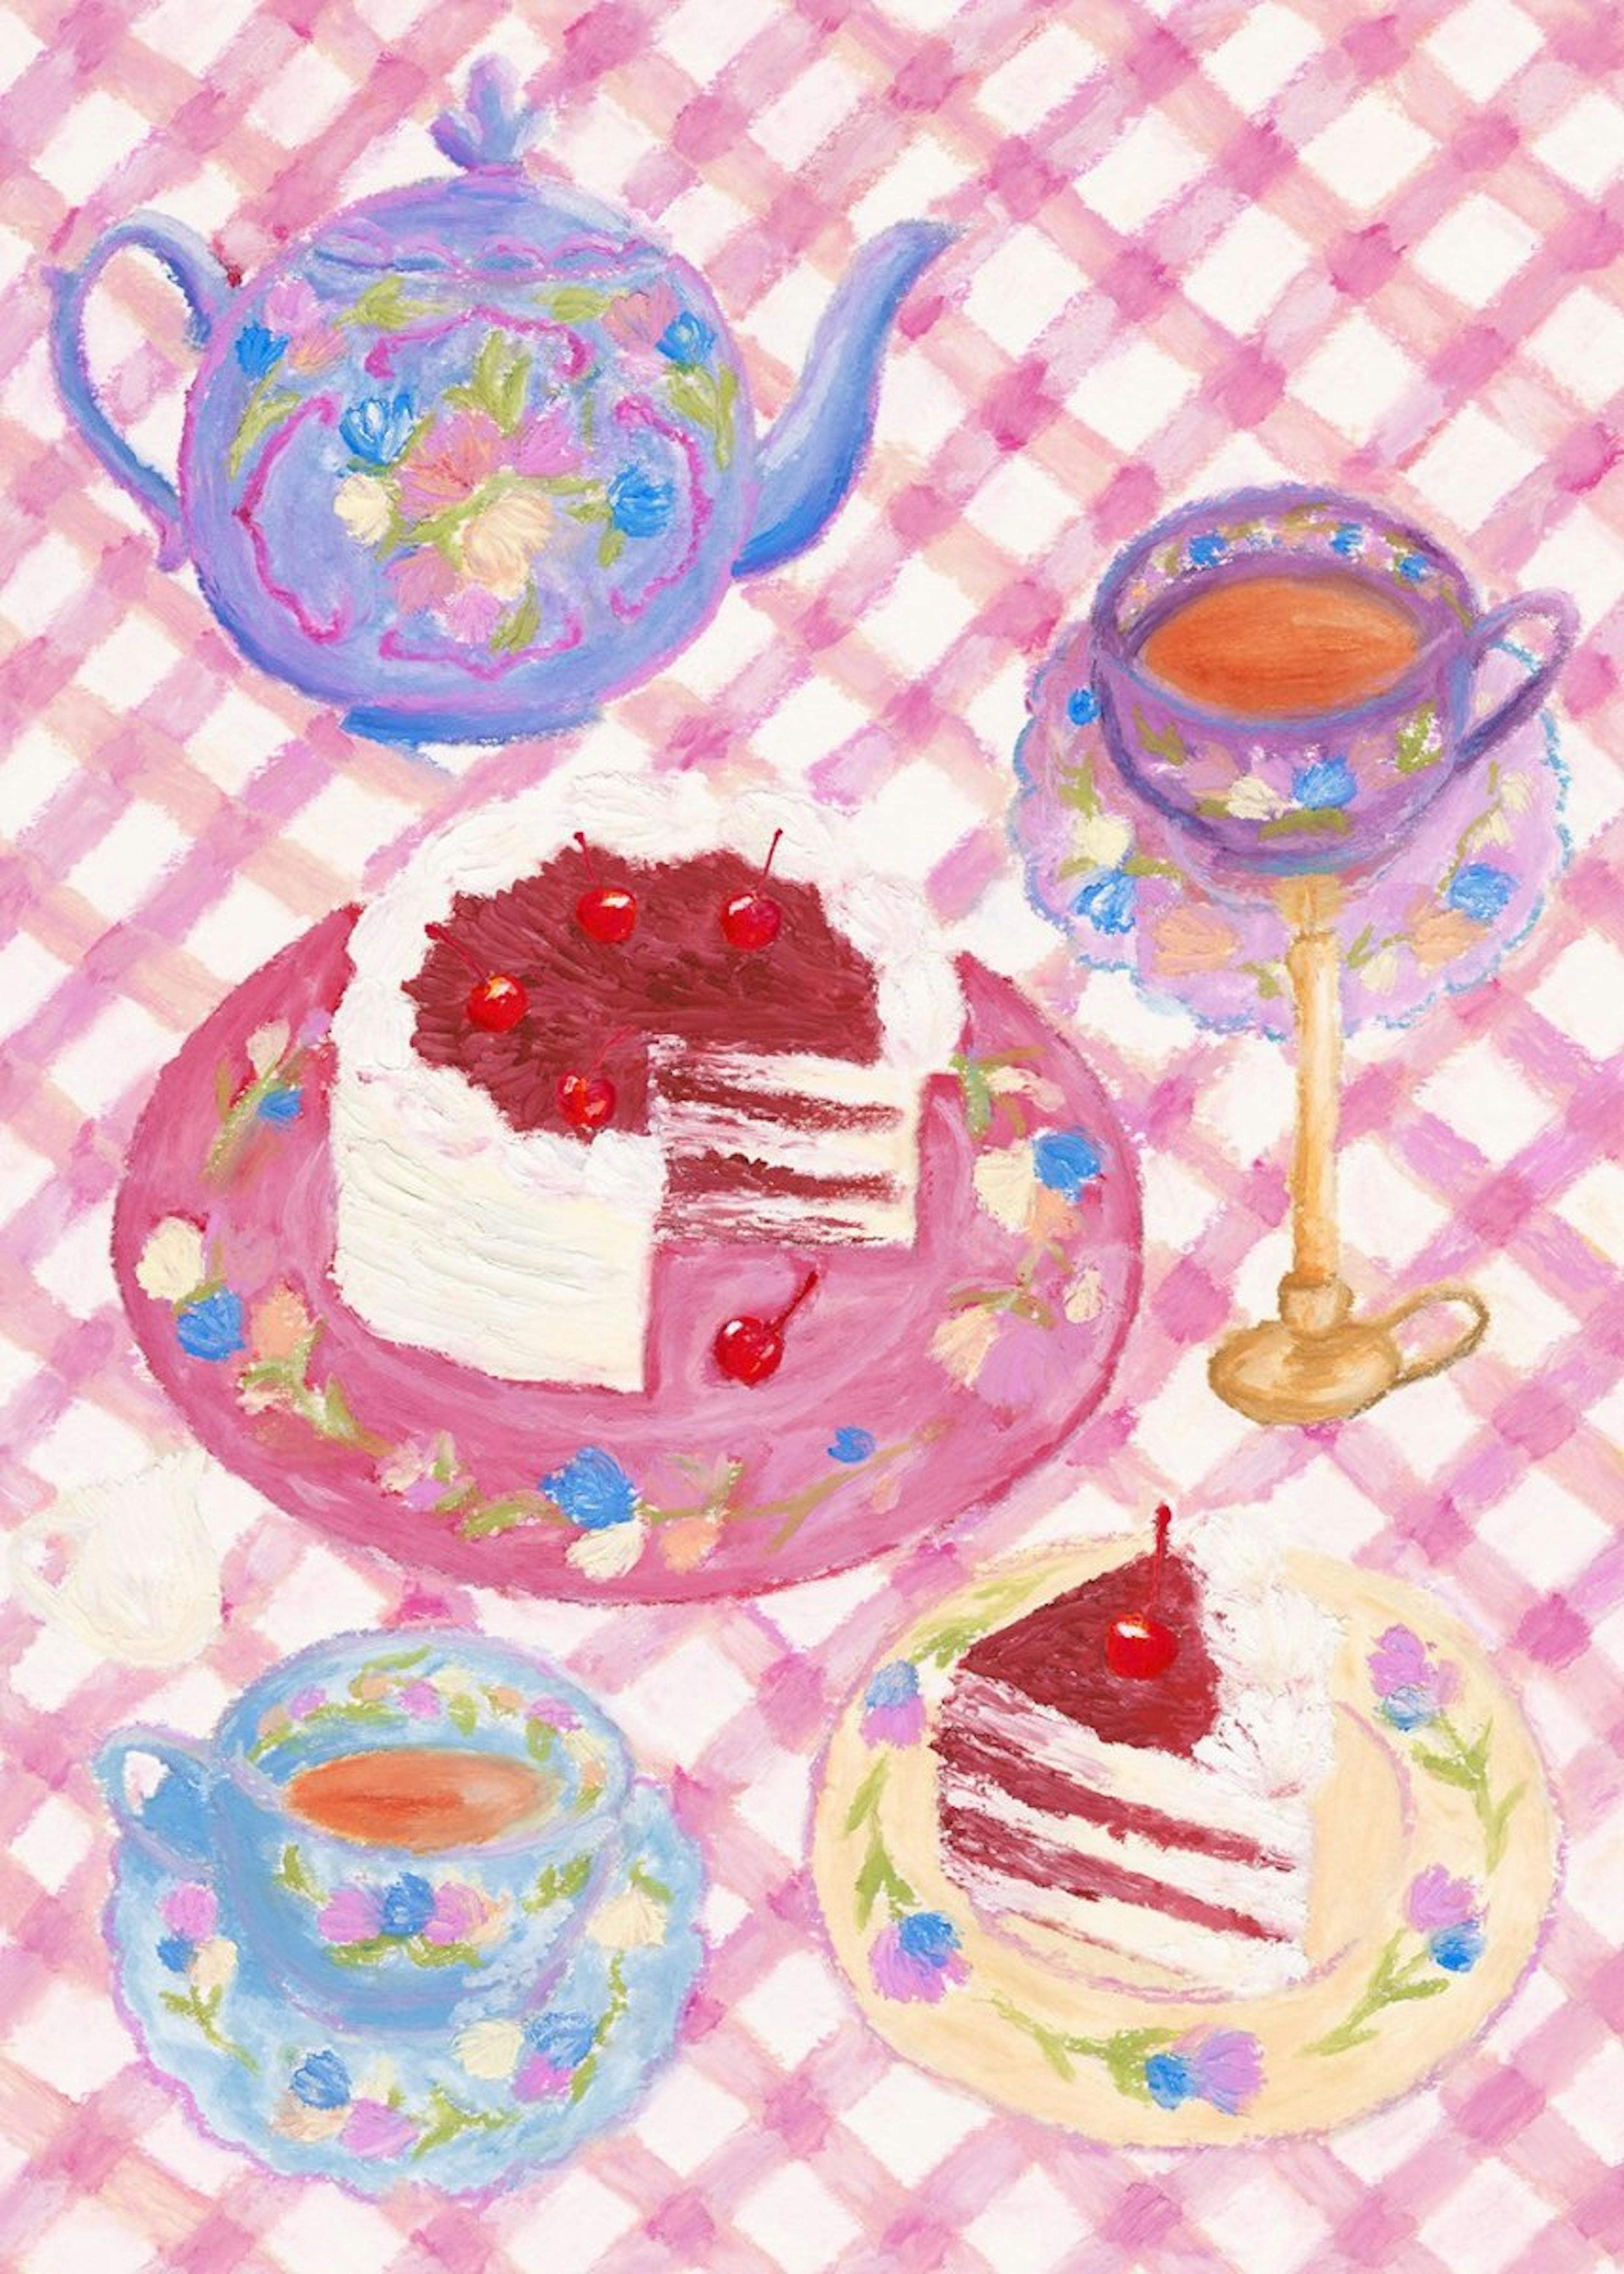 Cherry Red Velvet Cake Poster 0